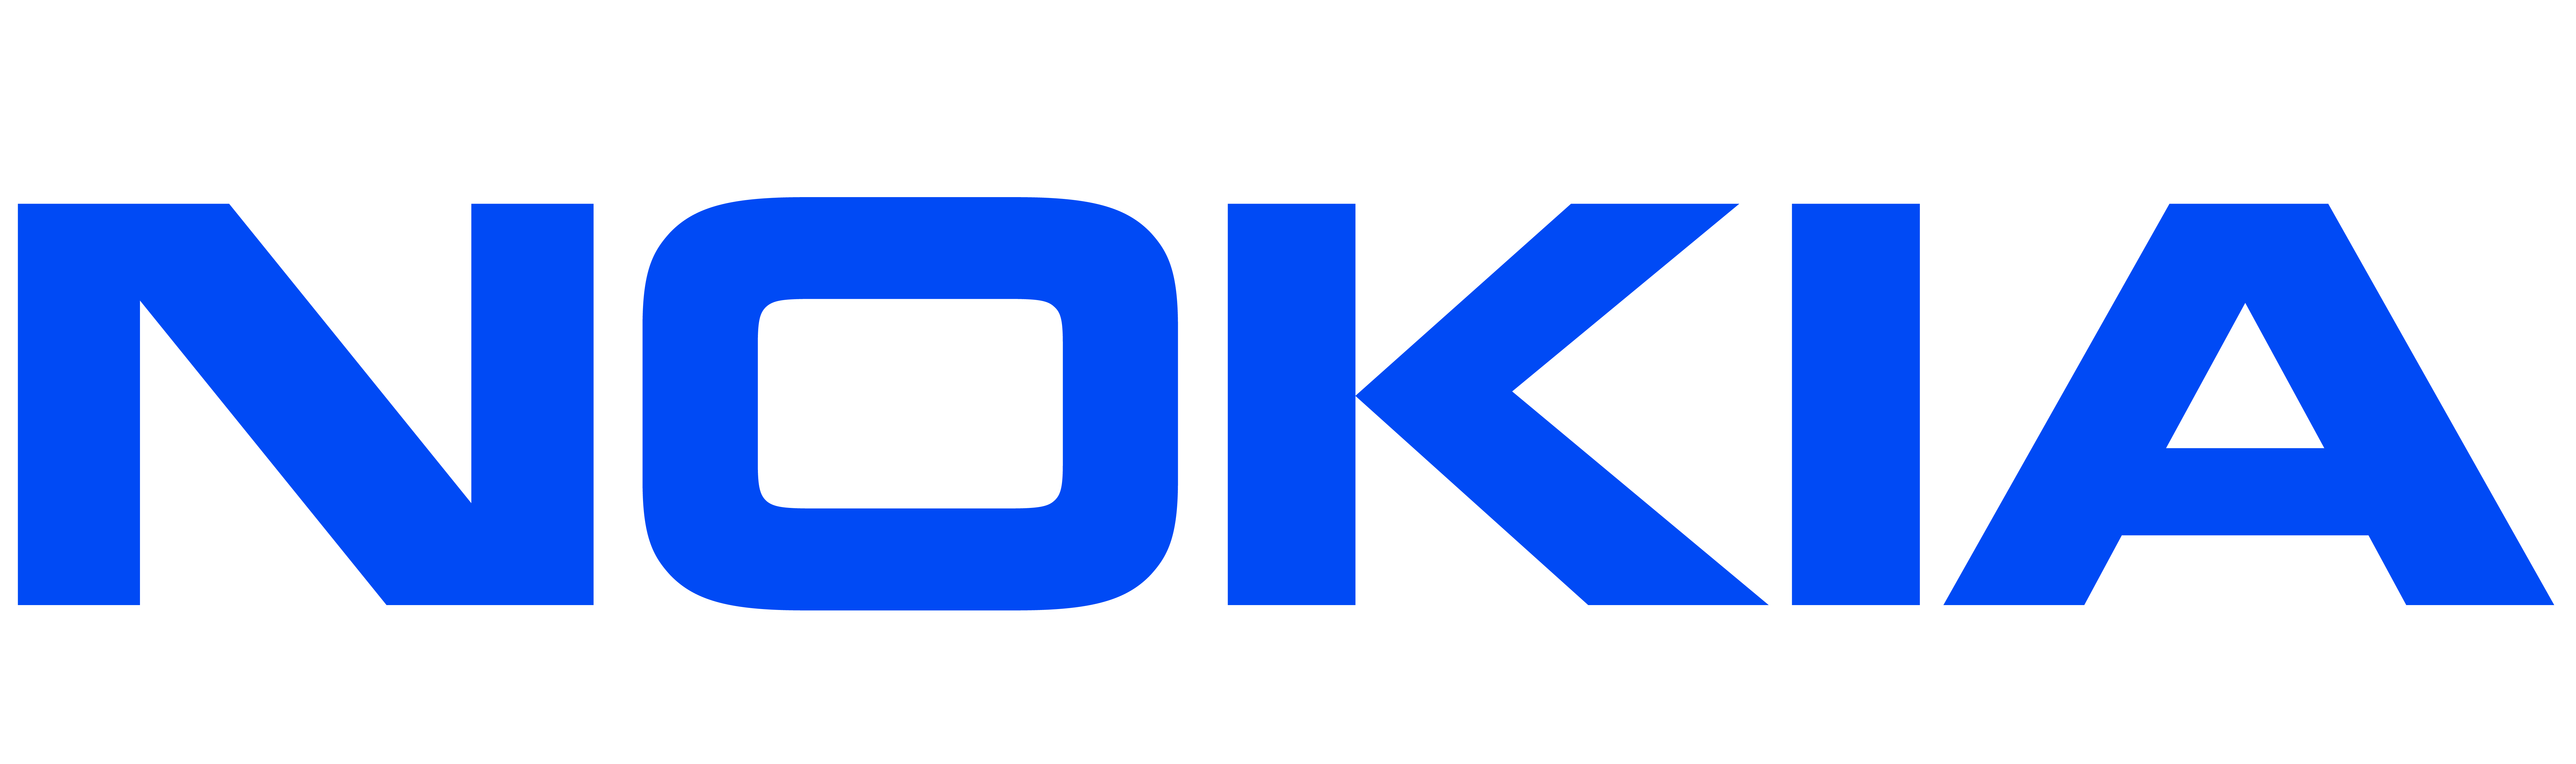 Nokia logo big 01